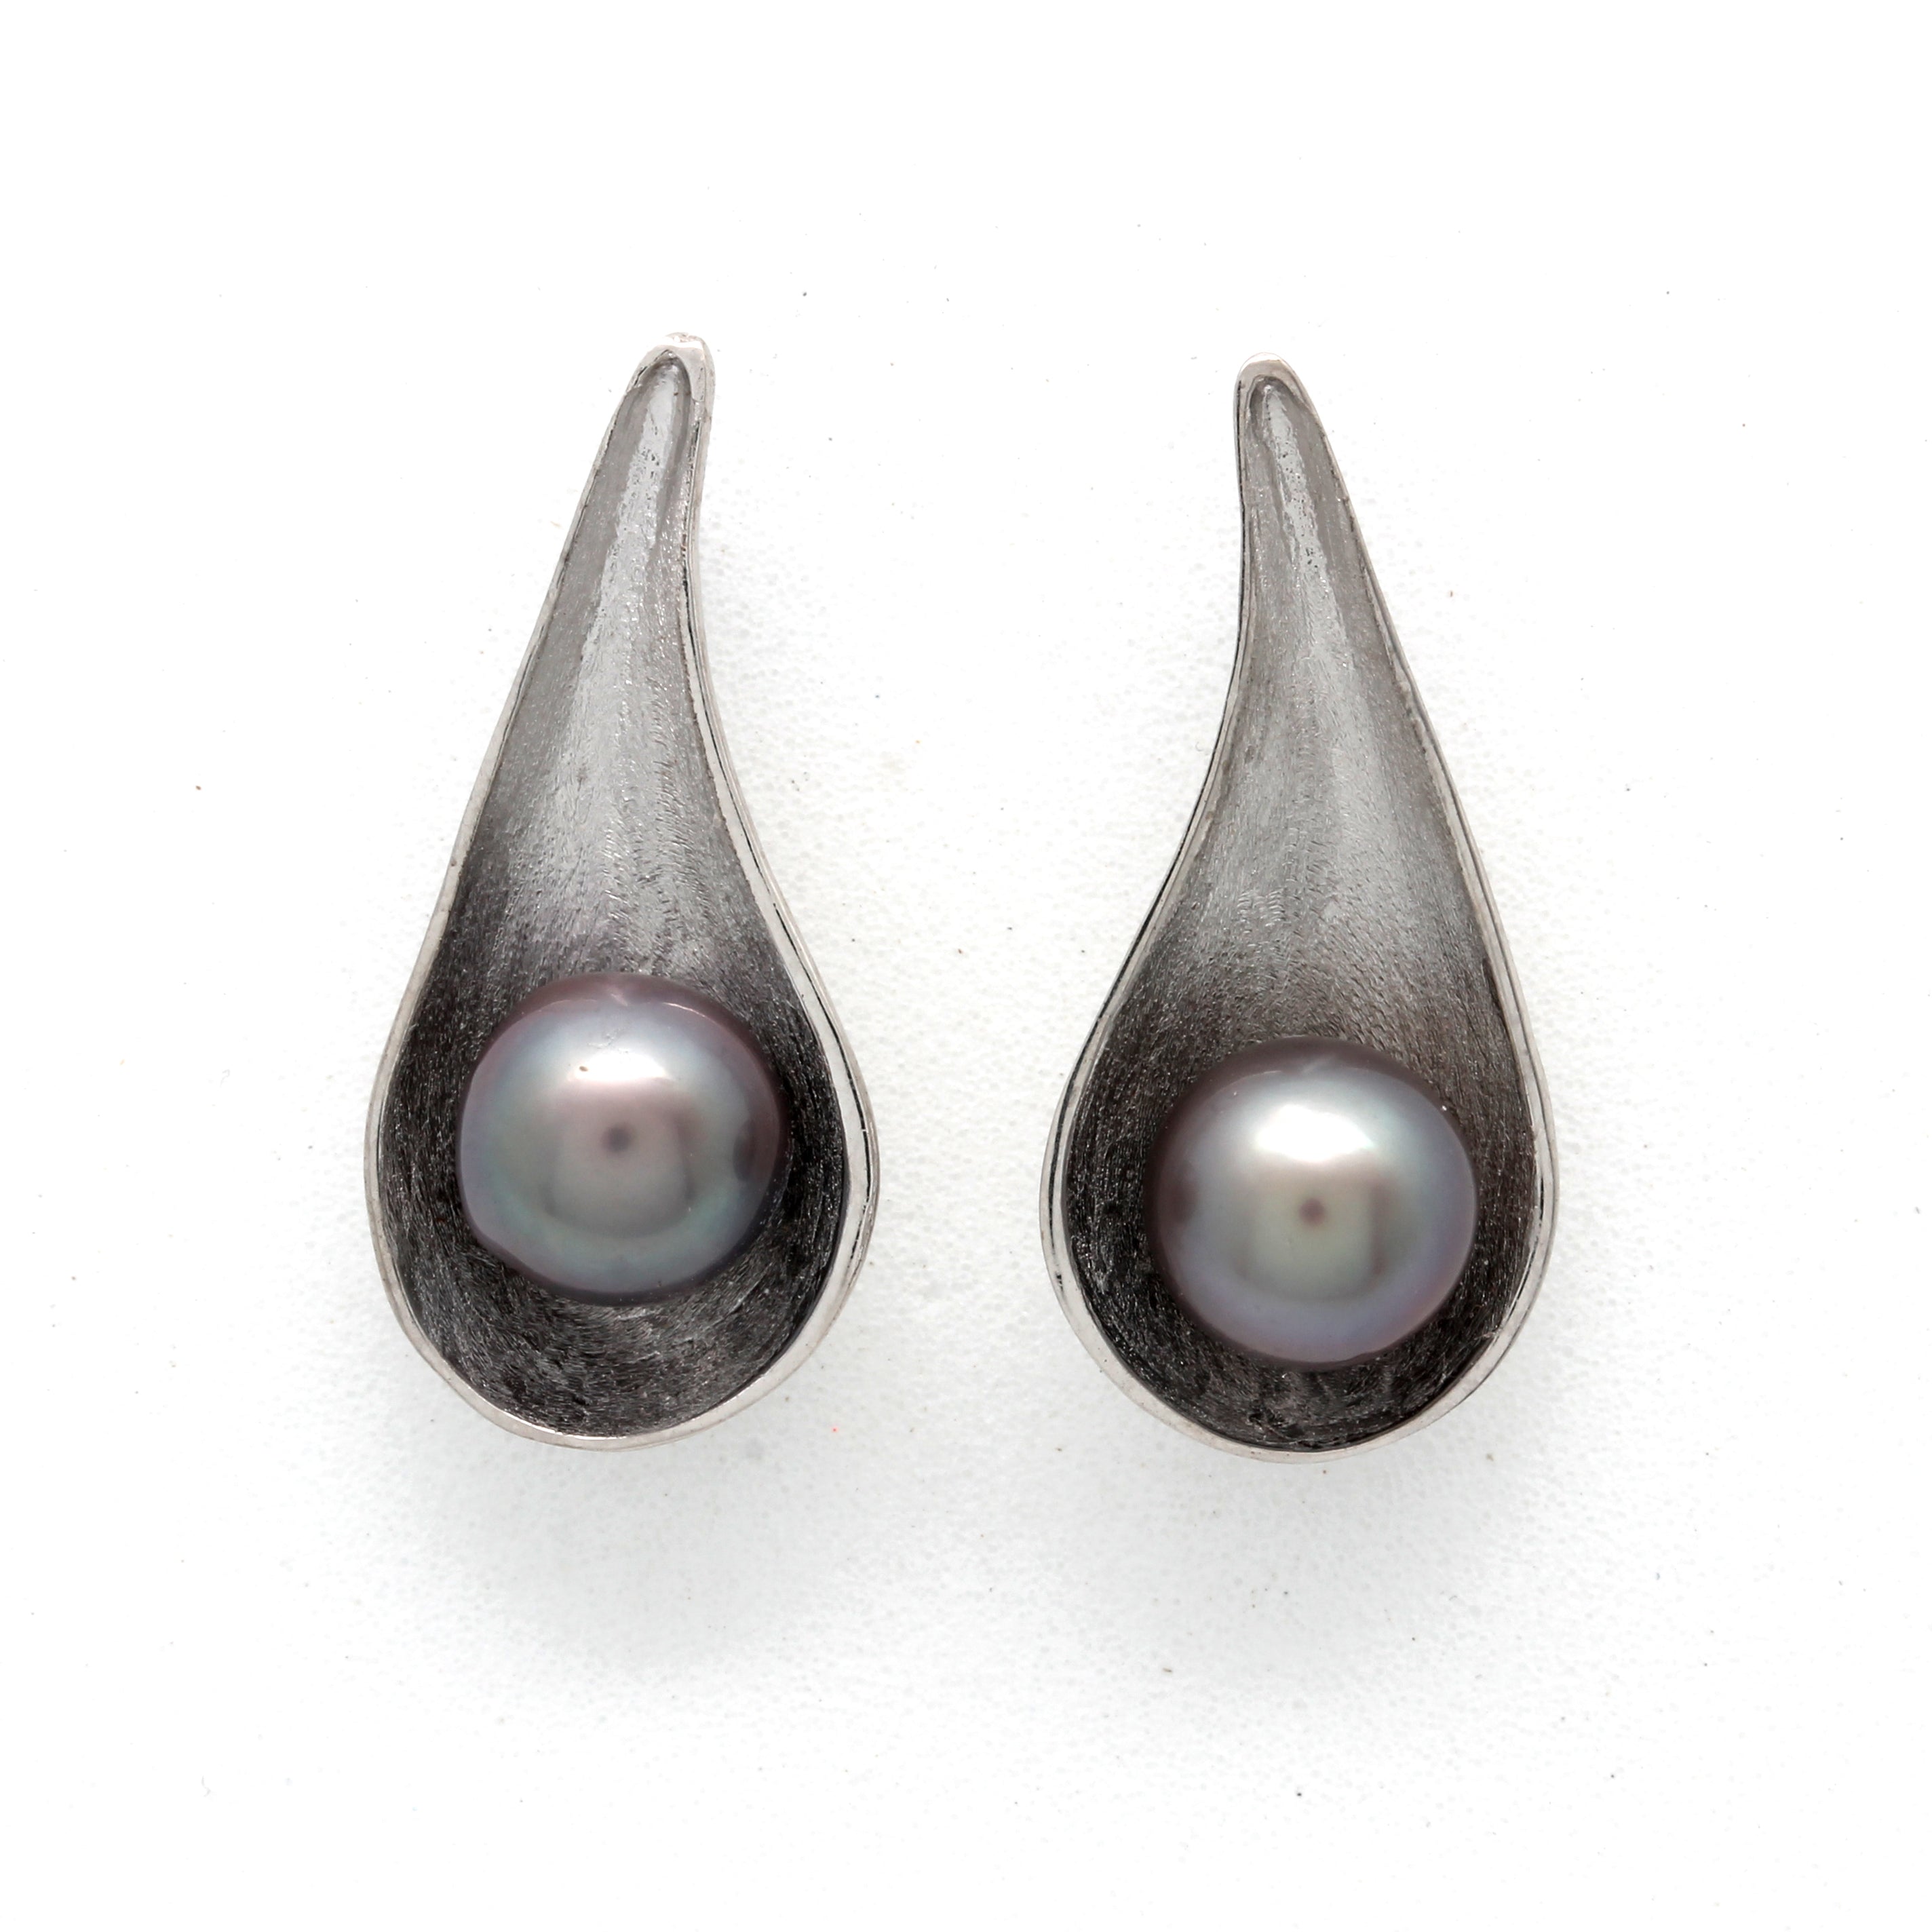 "Rain drop" Cortez pearl Silver Earrings by Gabriela Delgado